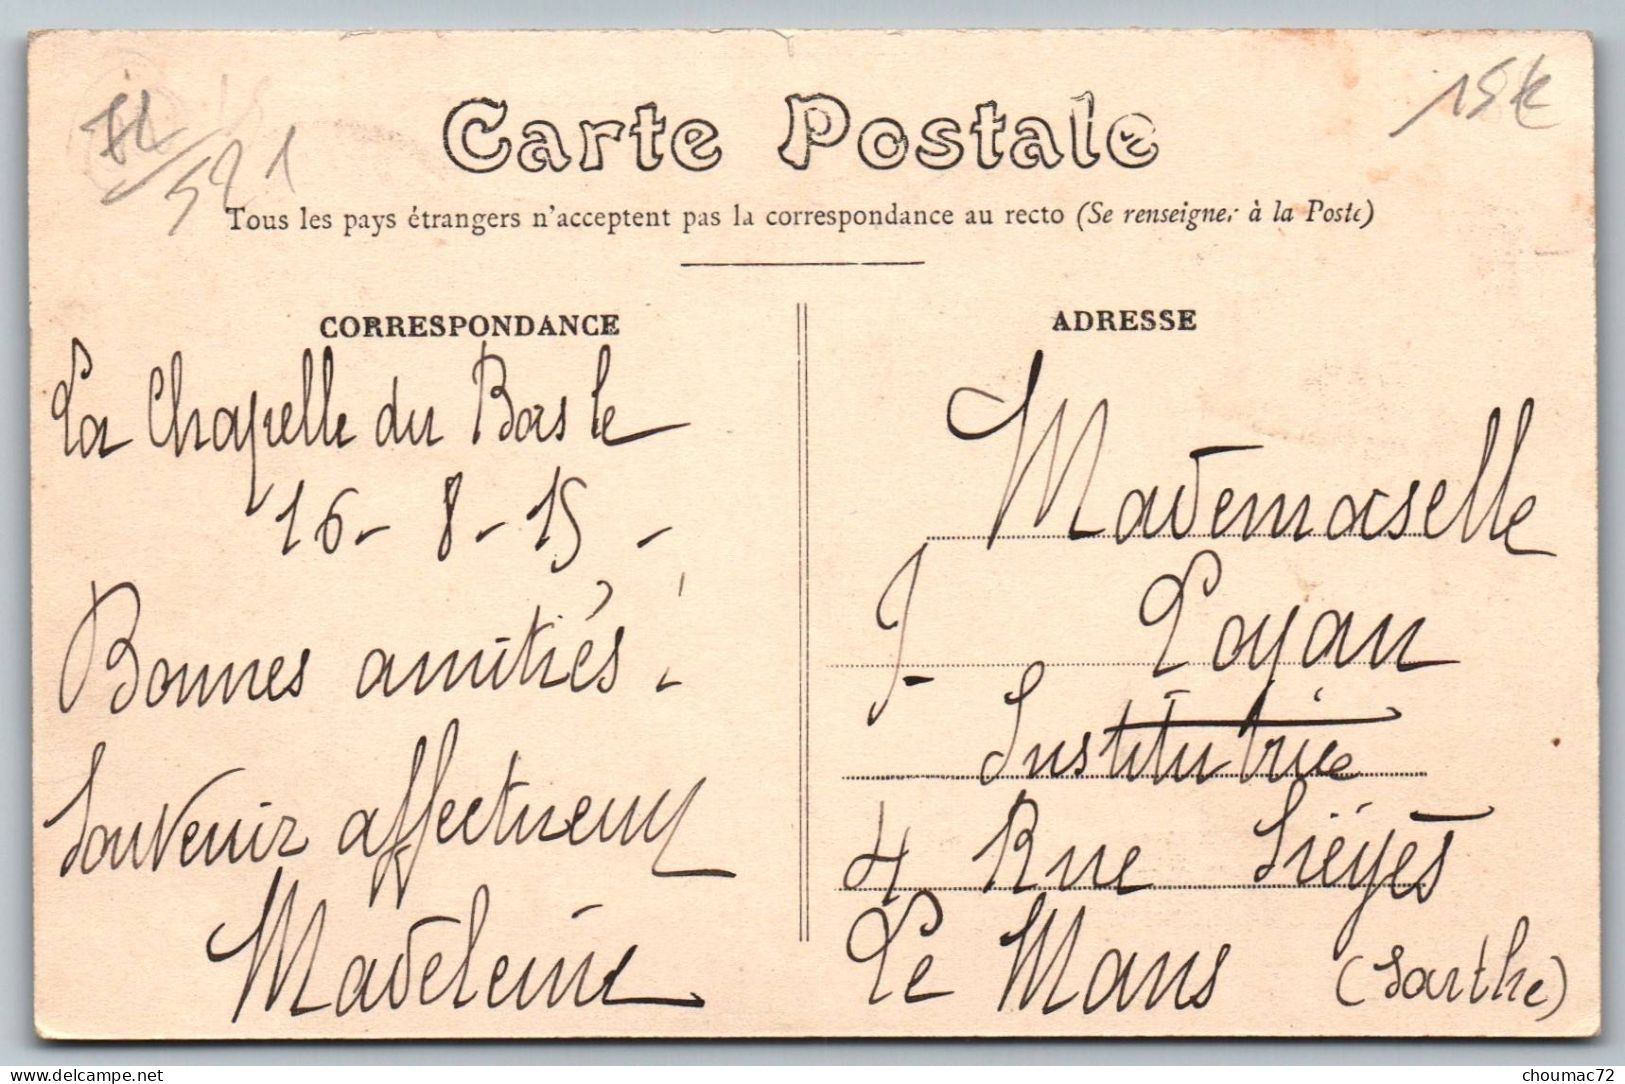 (72) 521, La Chapelle Du Bois, Route De Dehault - Other & Unclassified